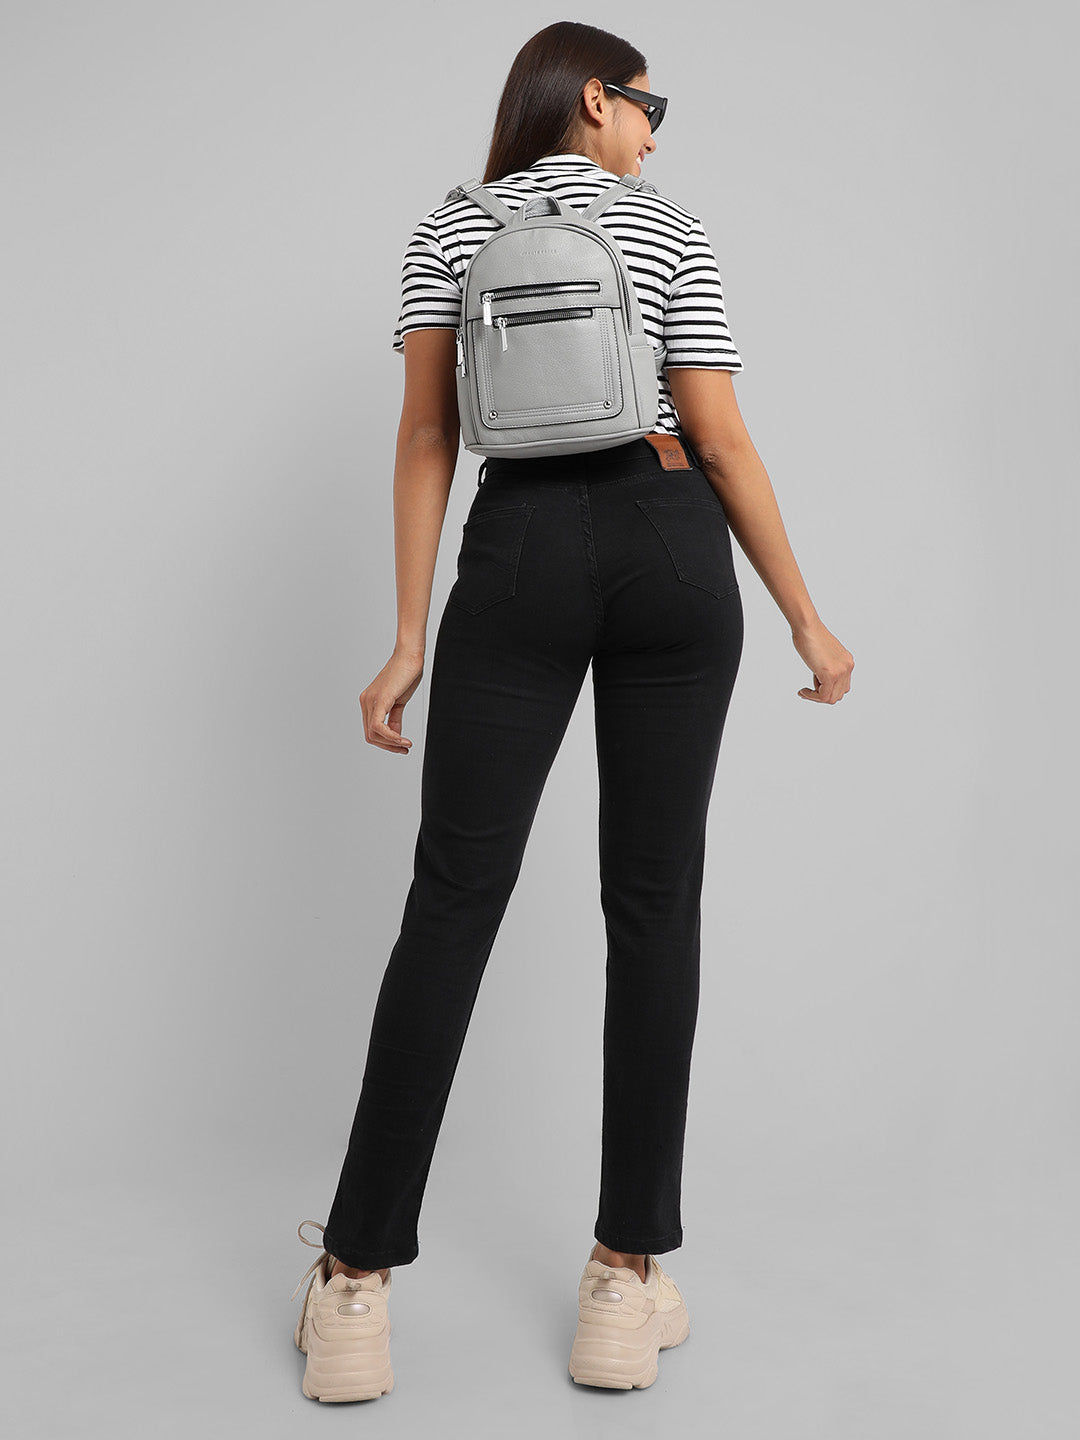 The Utility Mini Backpack - Grey